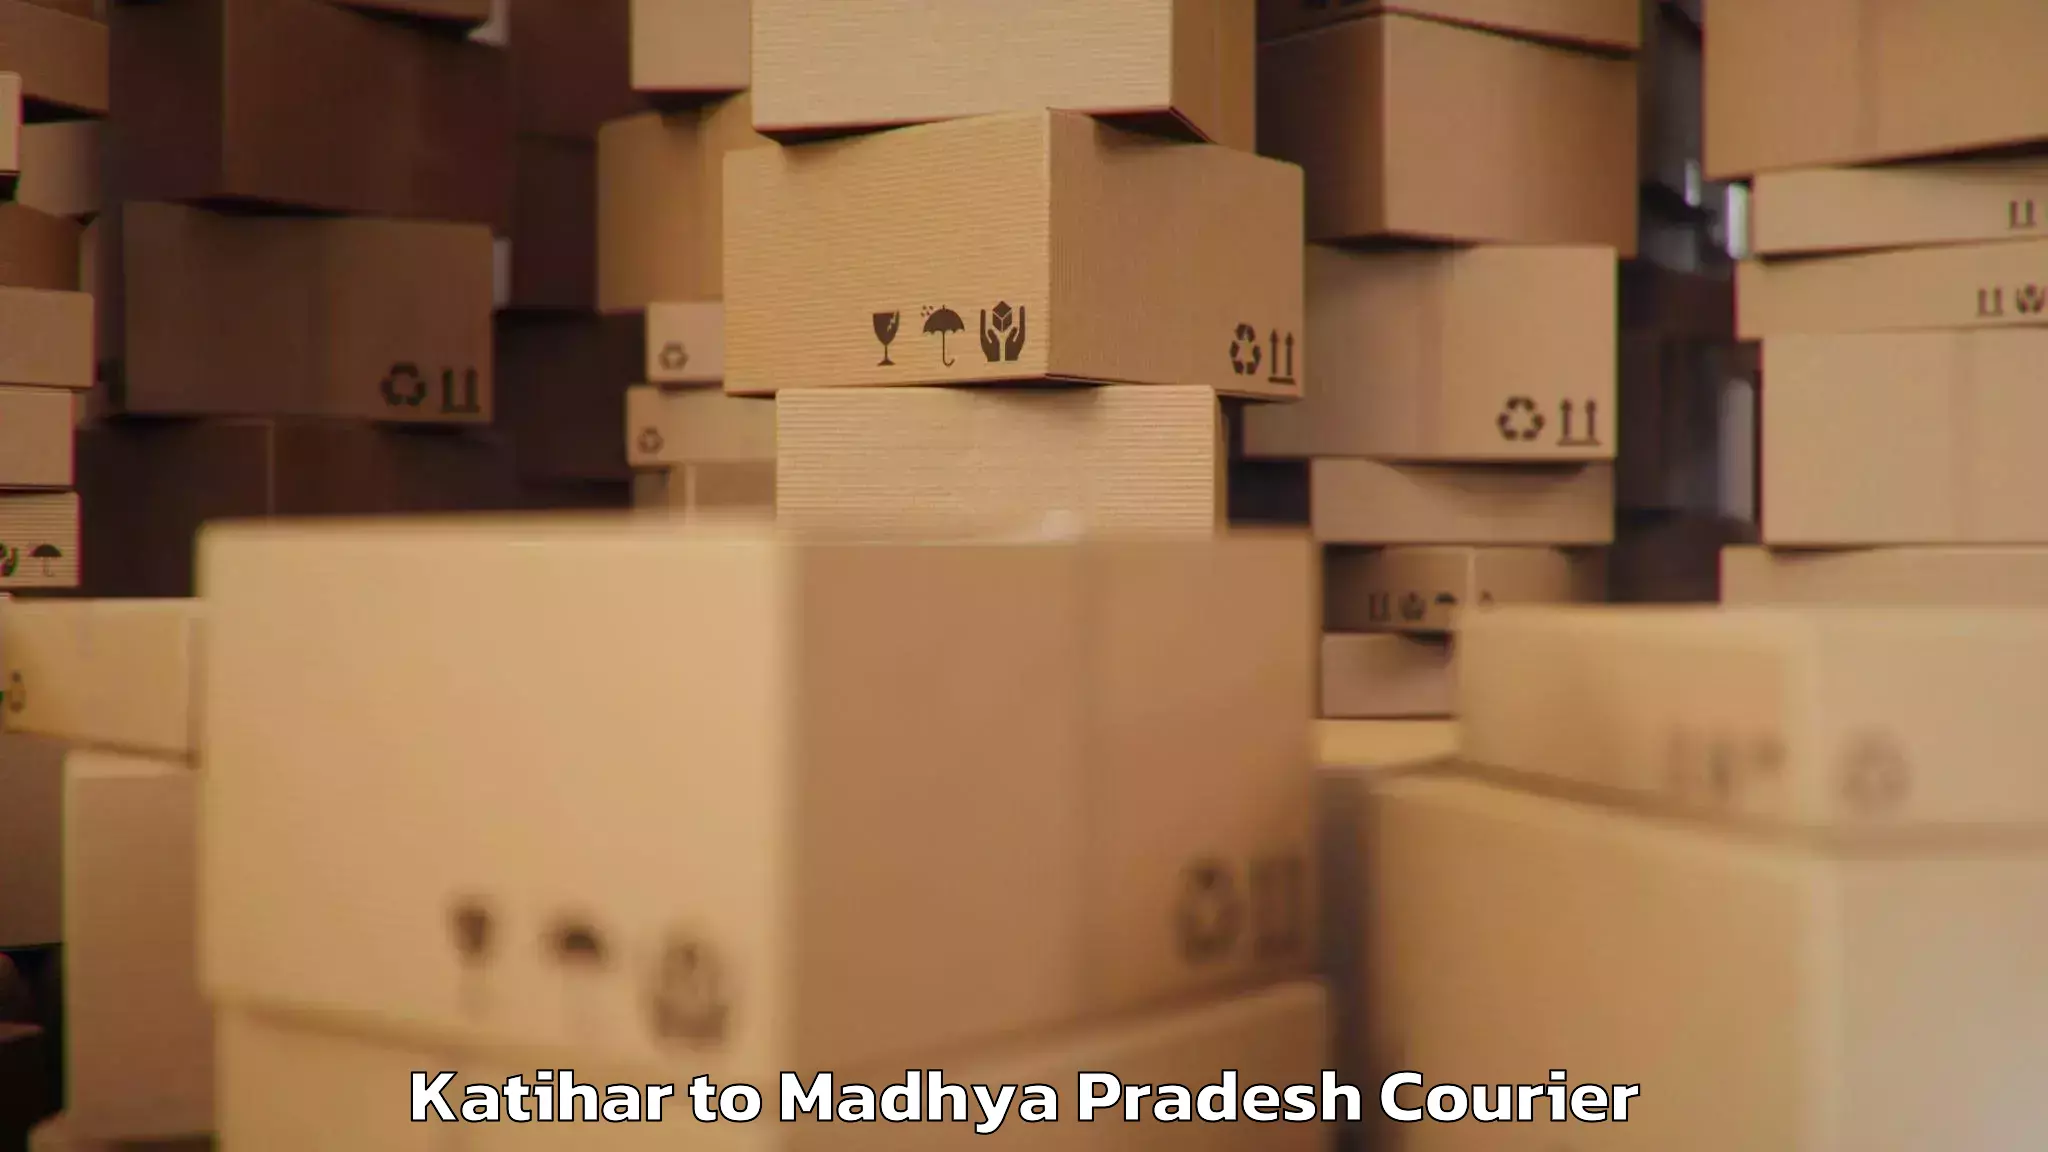 Baggage transport scheduler Katihar to Madhya Pradesh